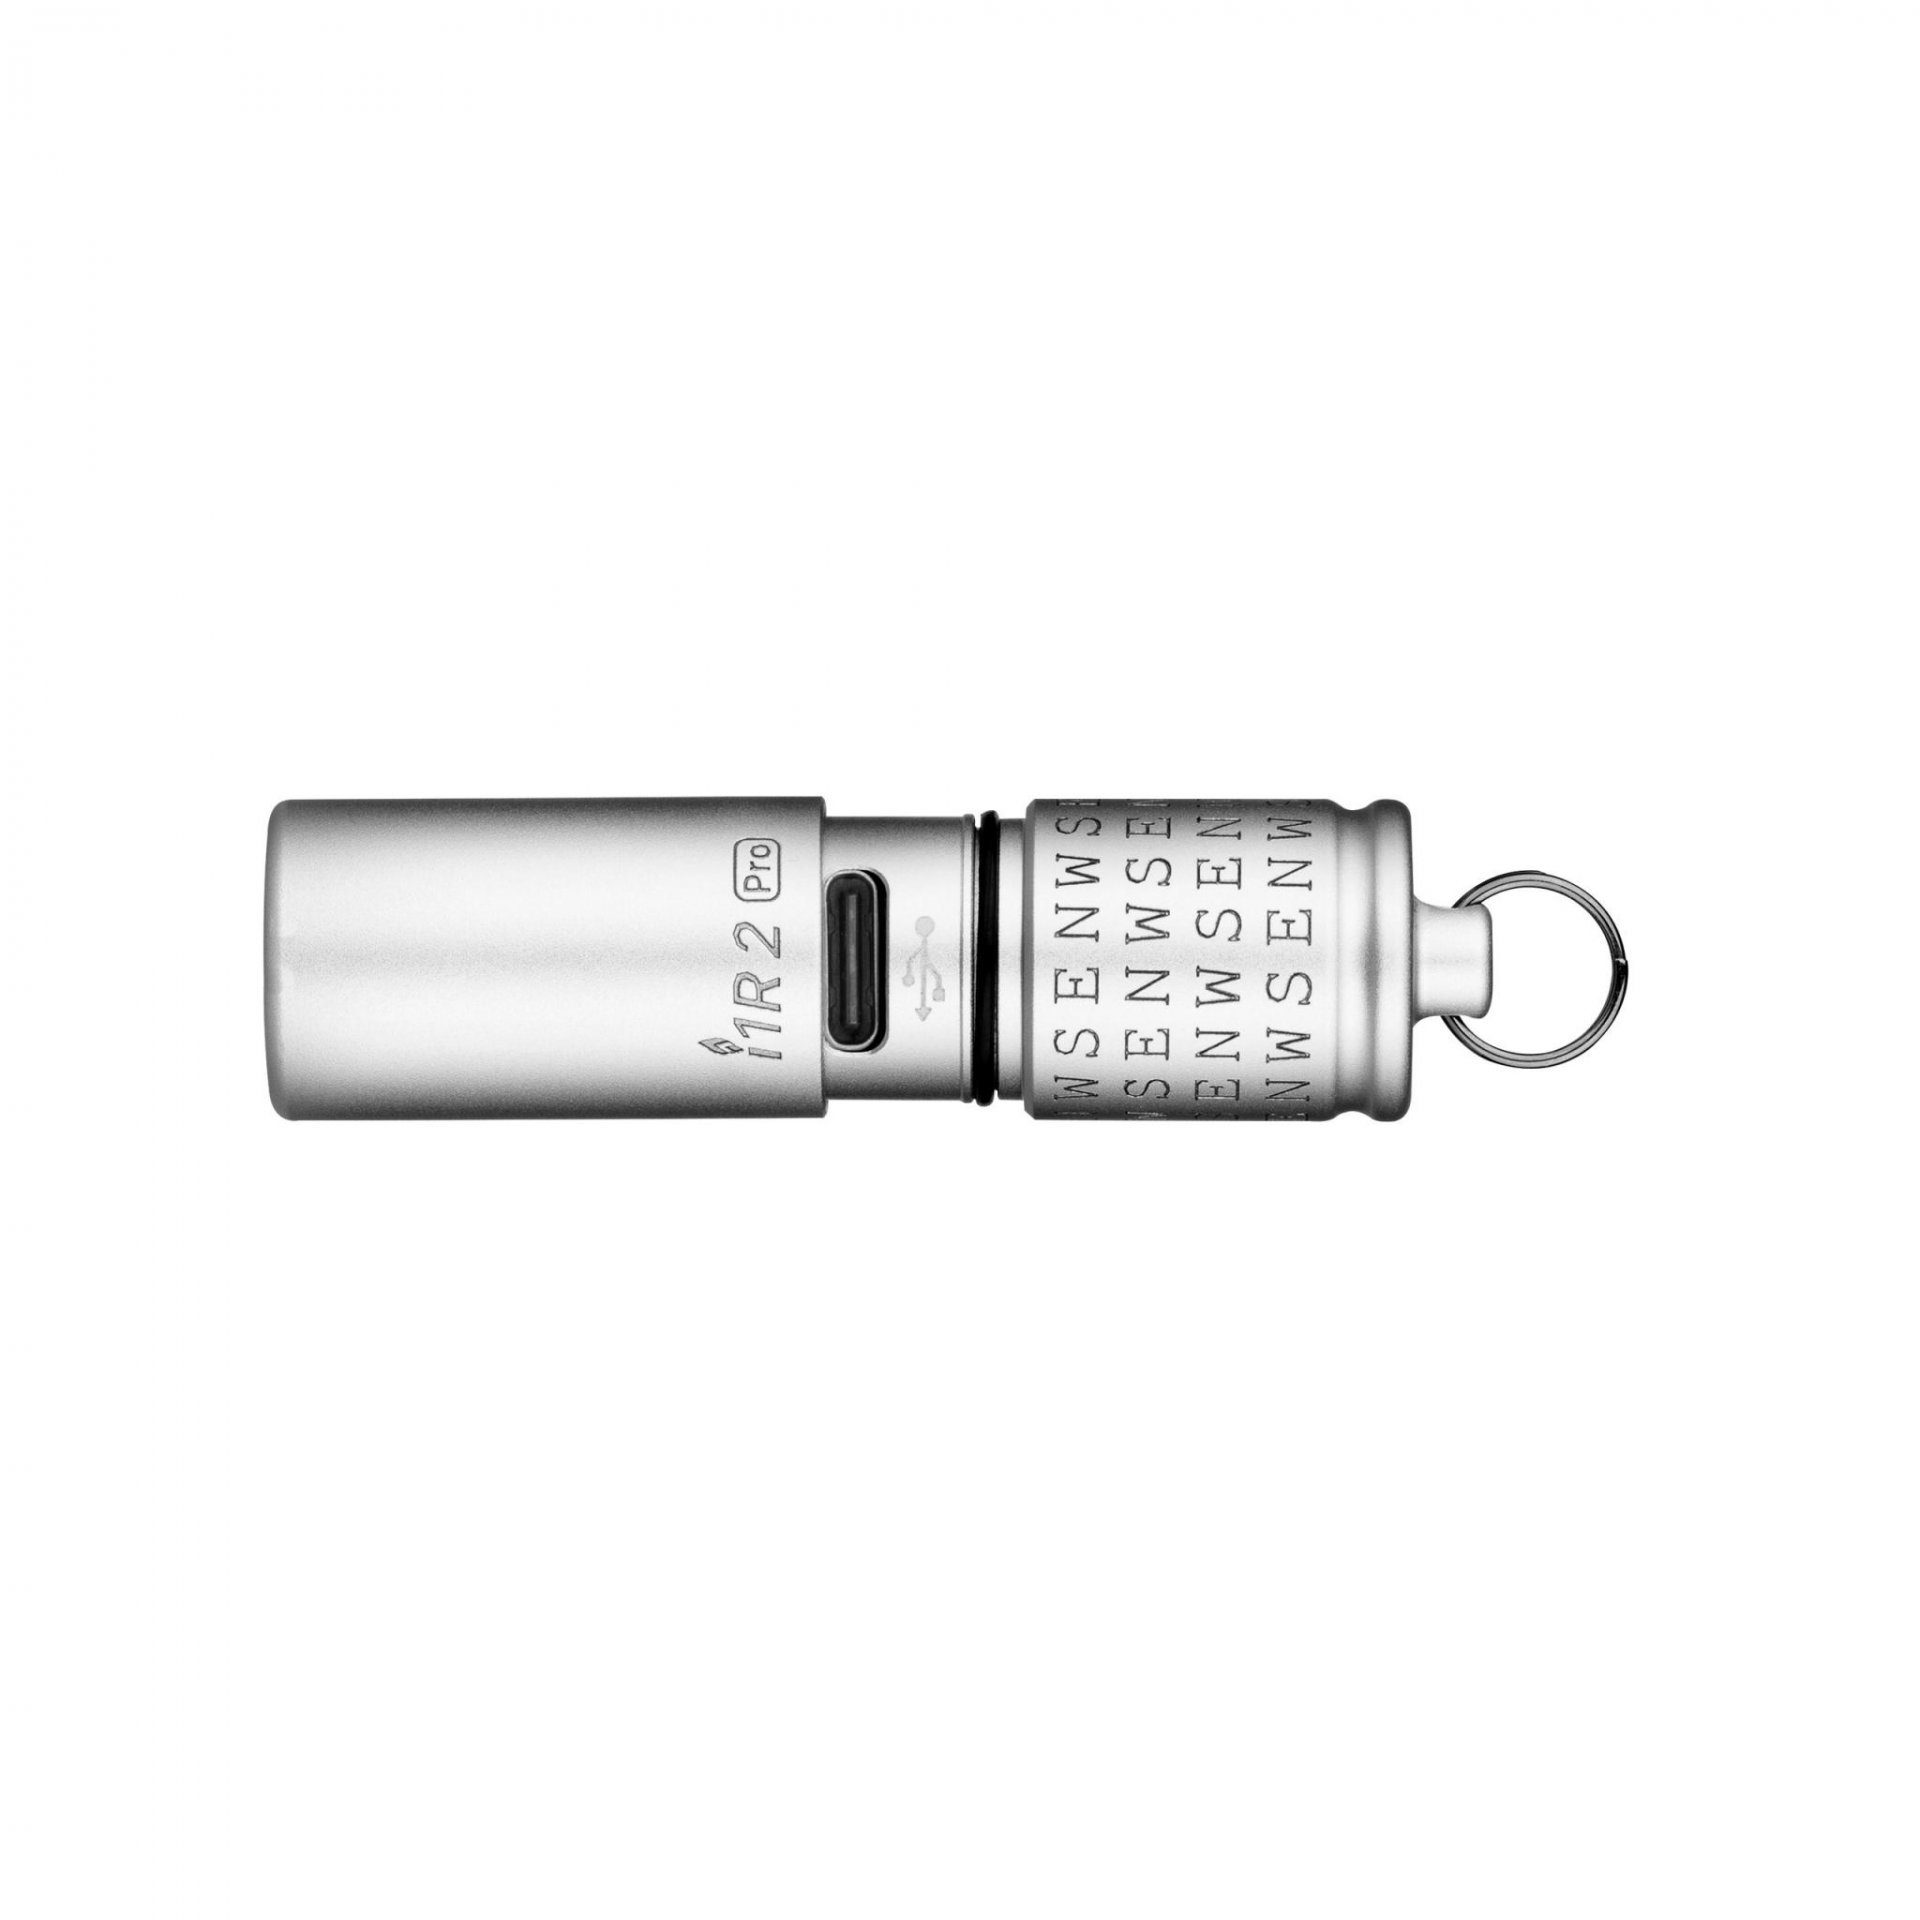 LED Pro OLIGHT Mini Taschenlampe Schlüsselbund I1R2 Taschenlampe Norden